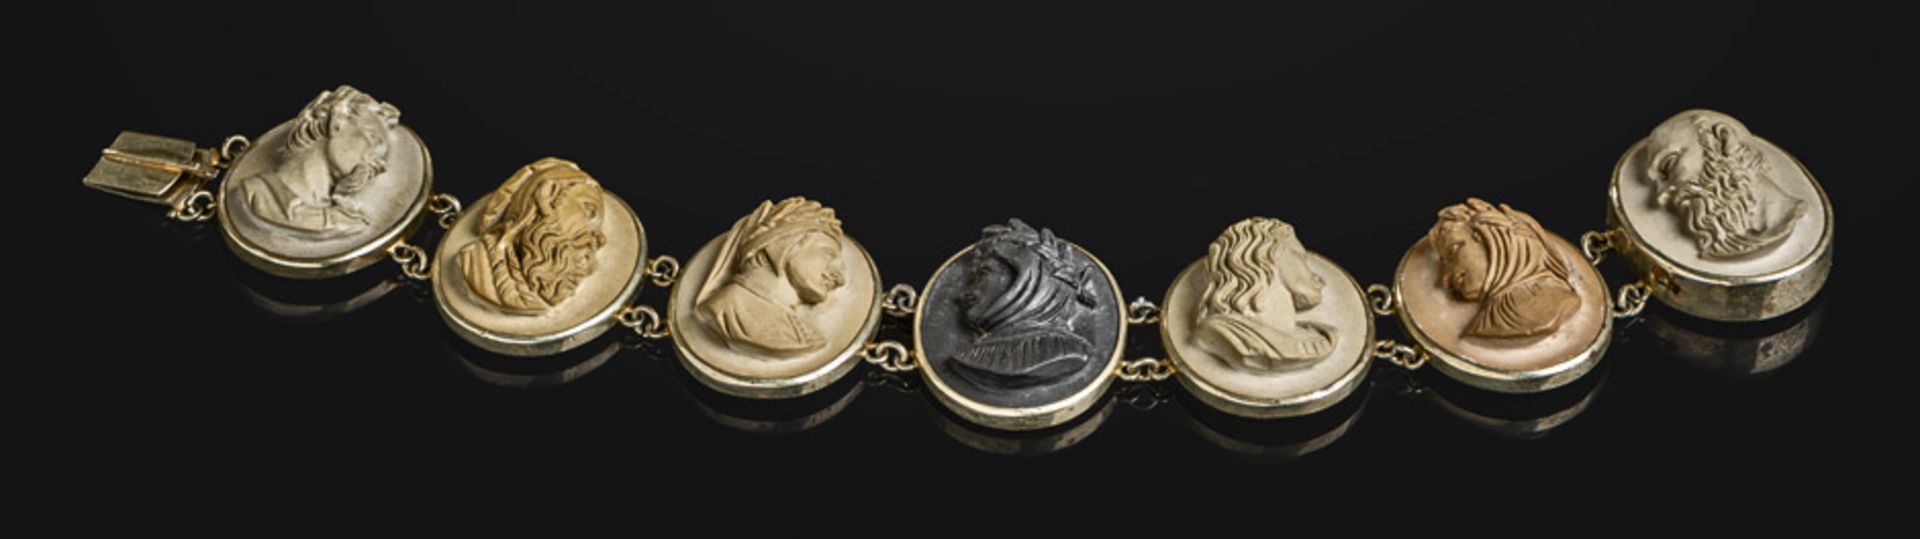 Lava-Armband: Lava-Armband mit Gemmen italienischer KünstlerLava-Armband aus Gemmen mit Bildnissen